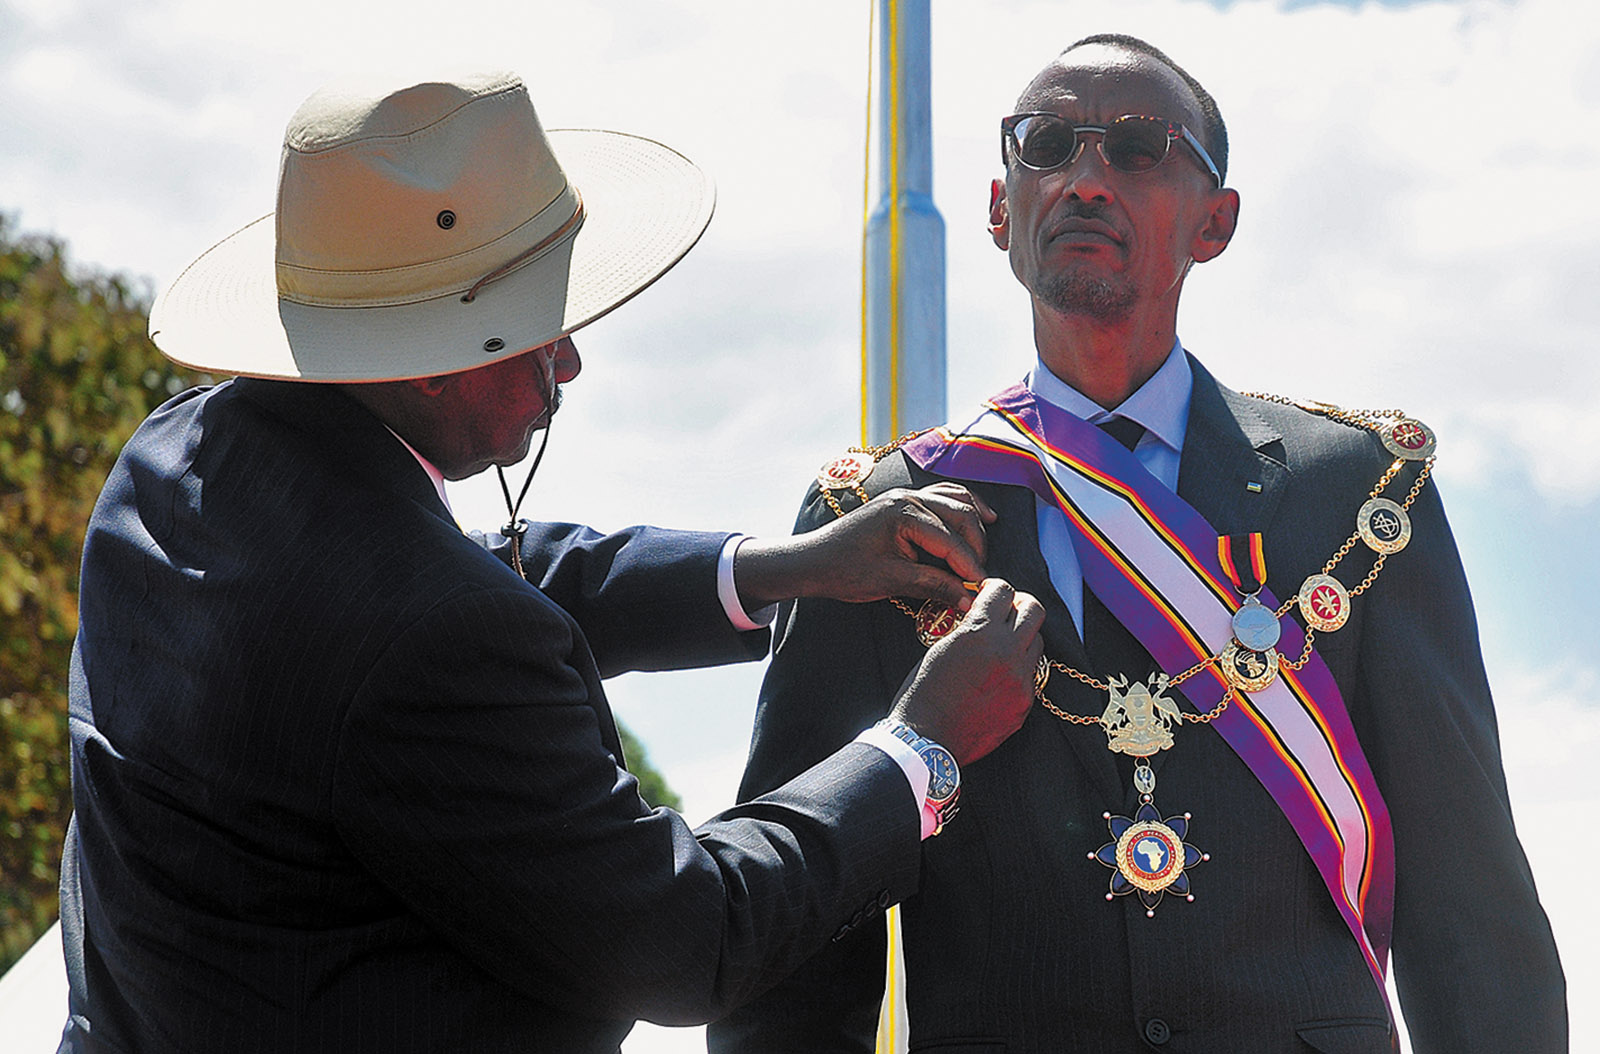 Rwandan president Paul Kagame receiving the Pearl of Africa Medal from Ugandan president Yoweri Museveni, Kapchorwa District, Uganda, 2012